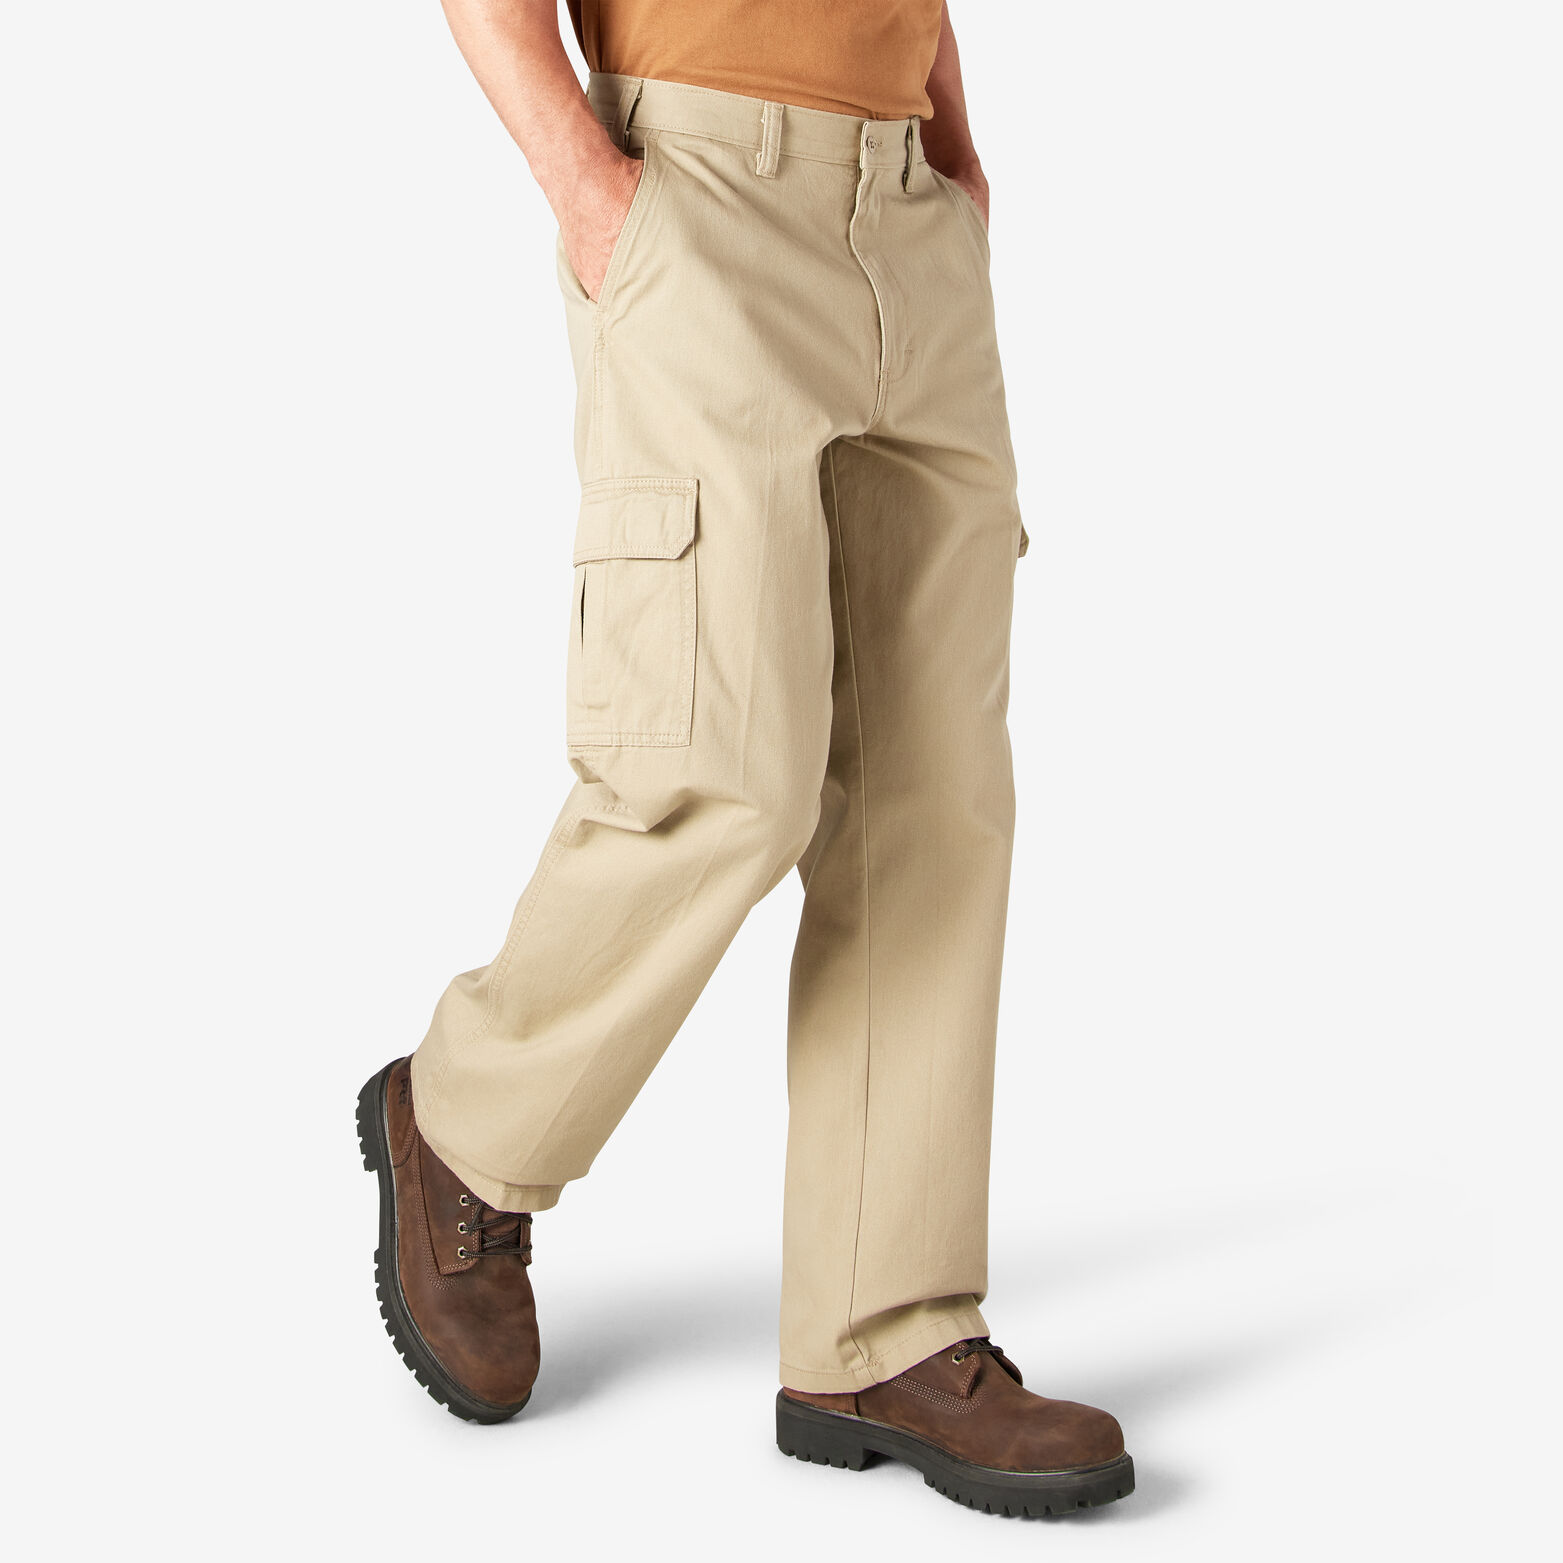 Loose Fit Cargo Pants For Men Khaki | Dickies